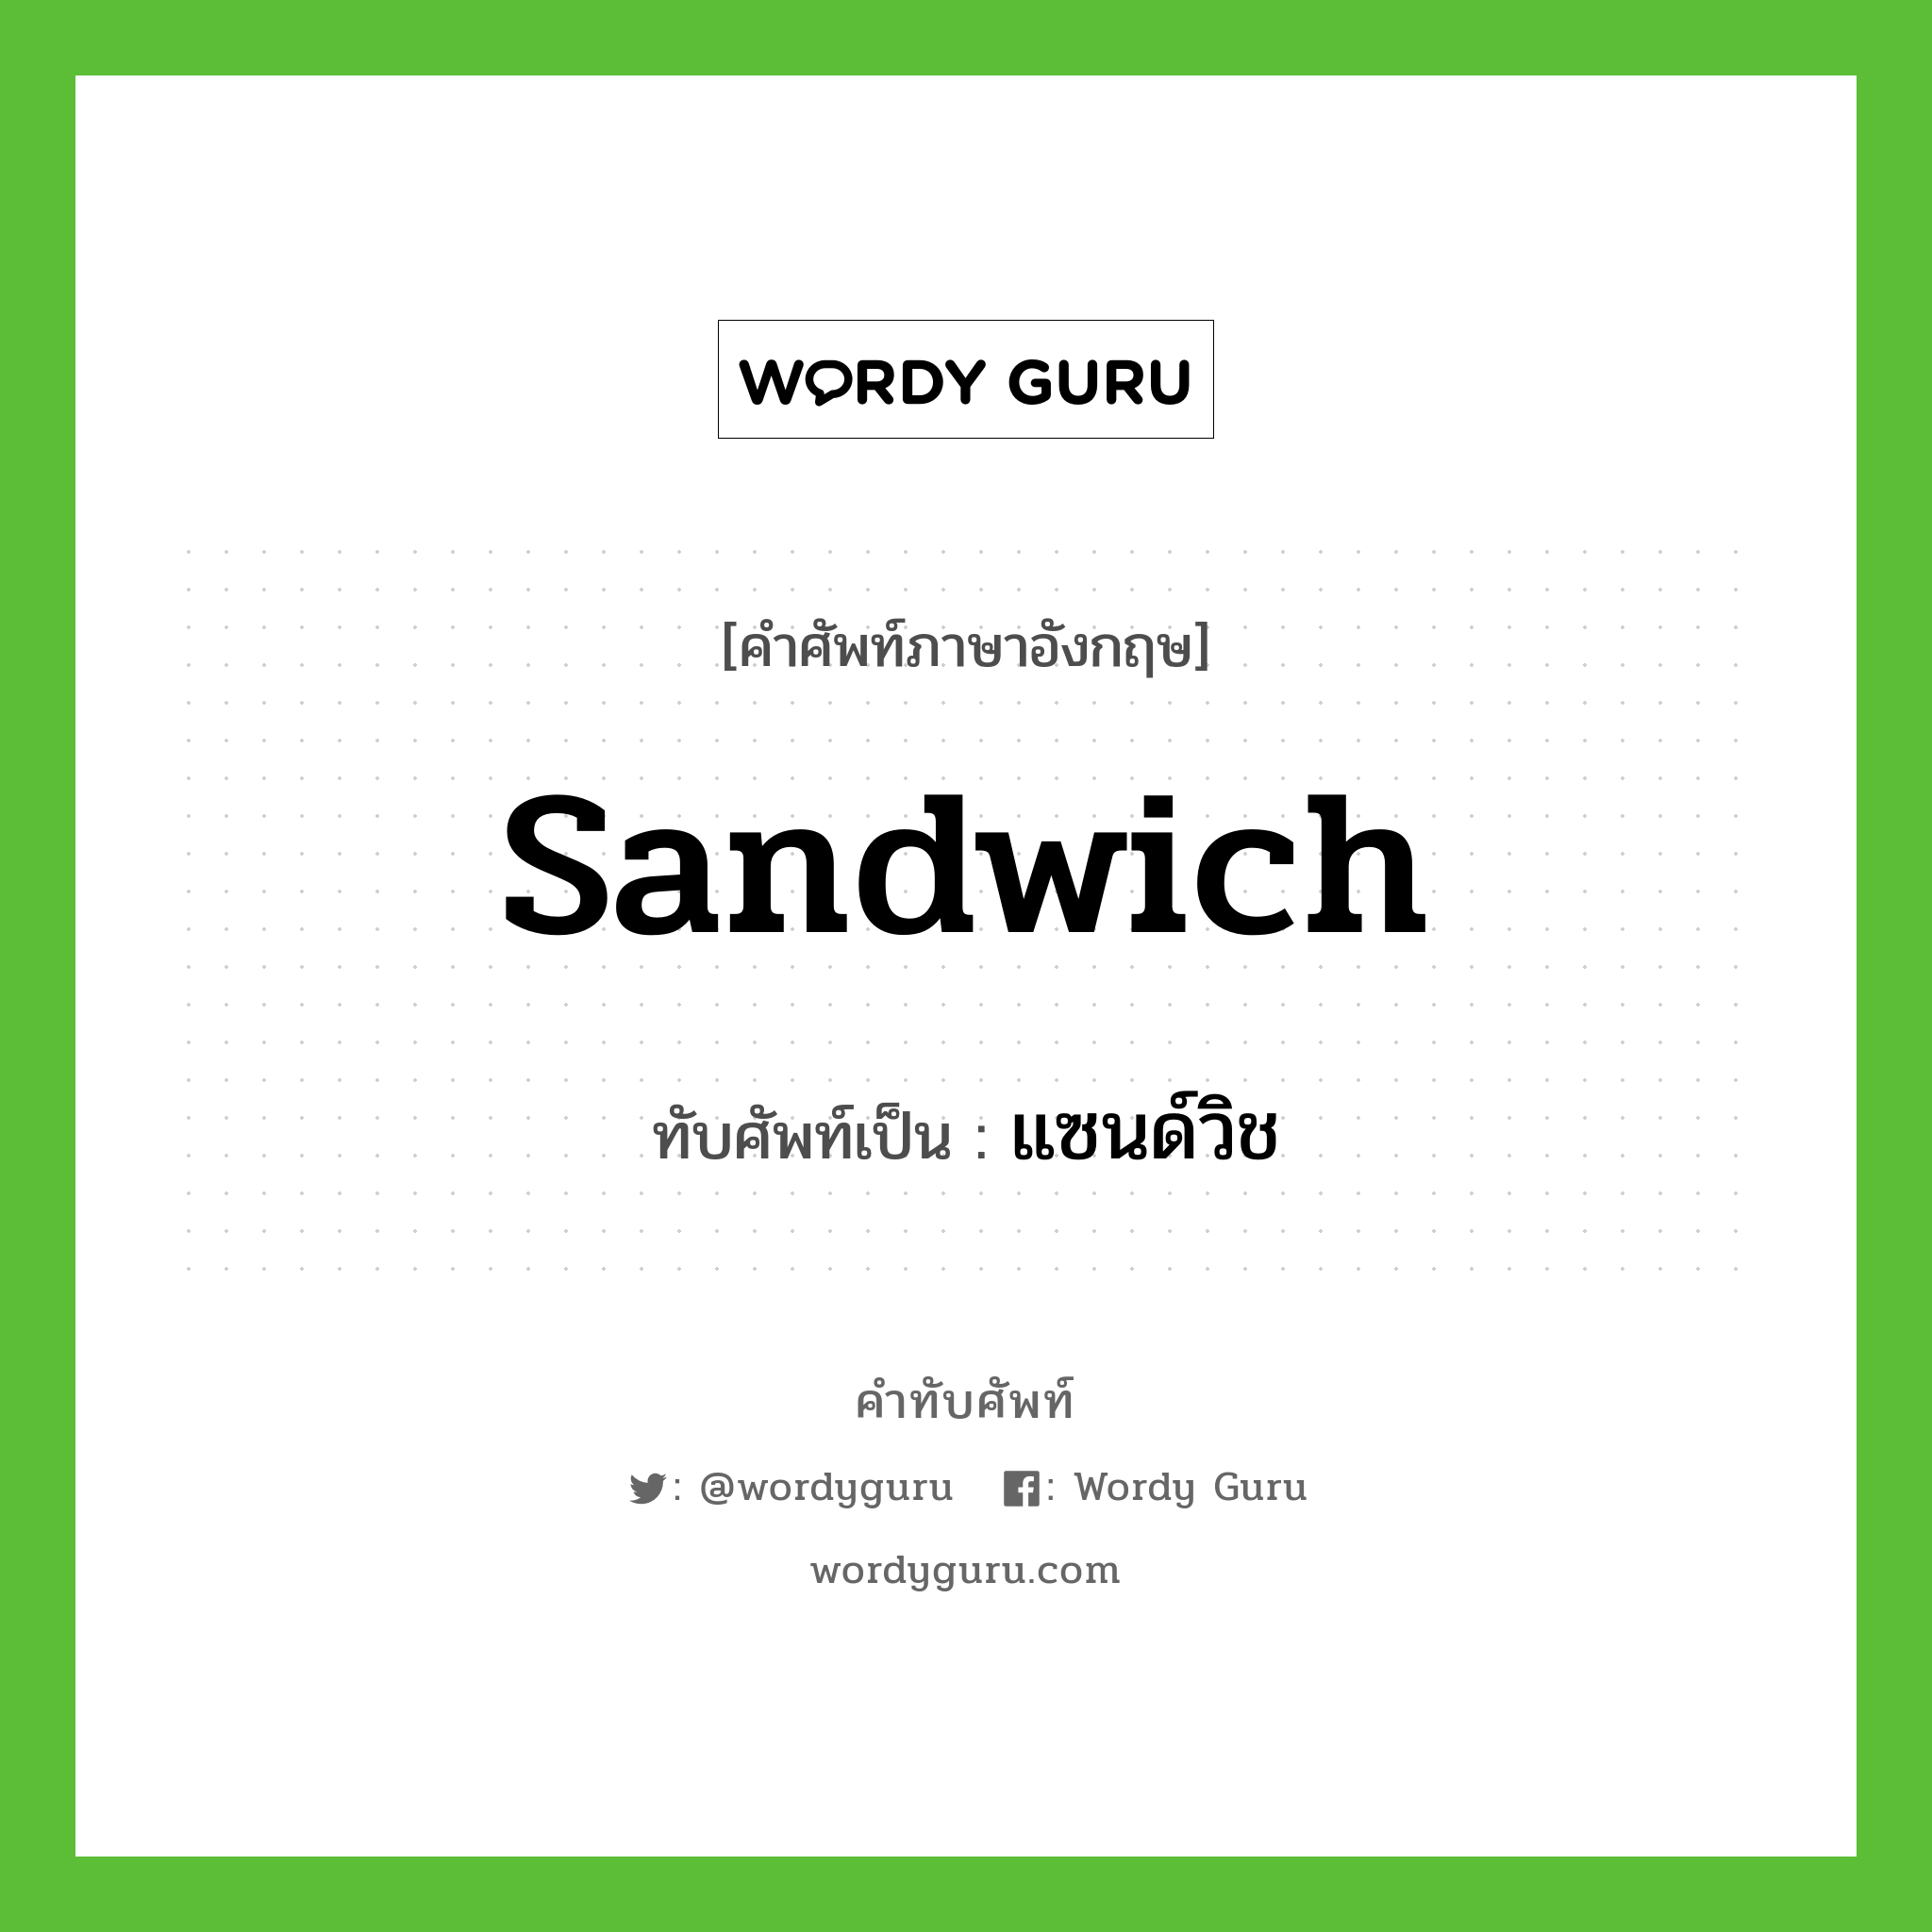 sandwich เขียนเป็นคำไทยว่าอะไร?, คำศัพท์ภาษาอังกฤษ sandwich ทับศัพท์เป็น แซนด์วิช